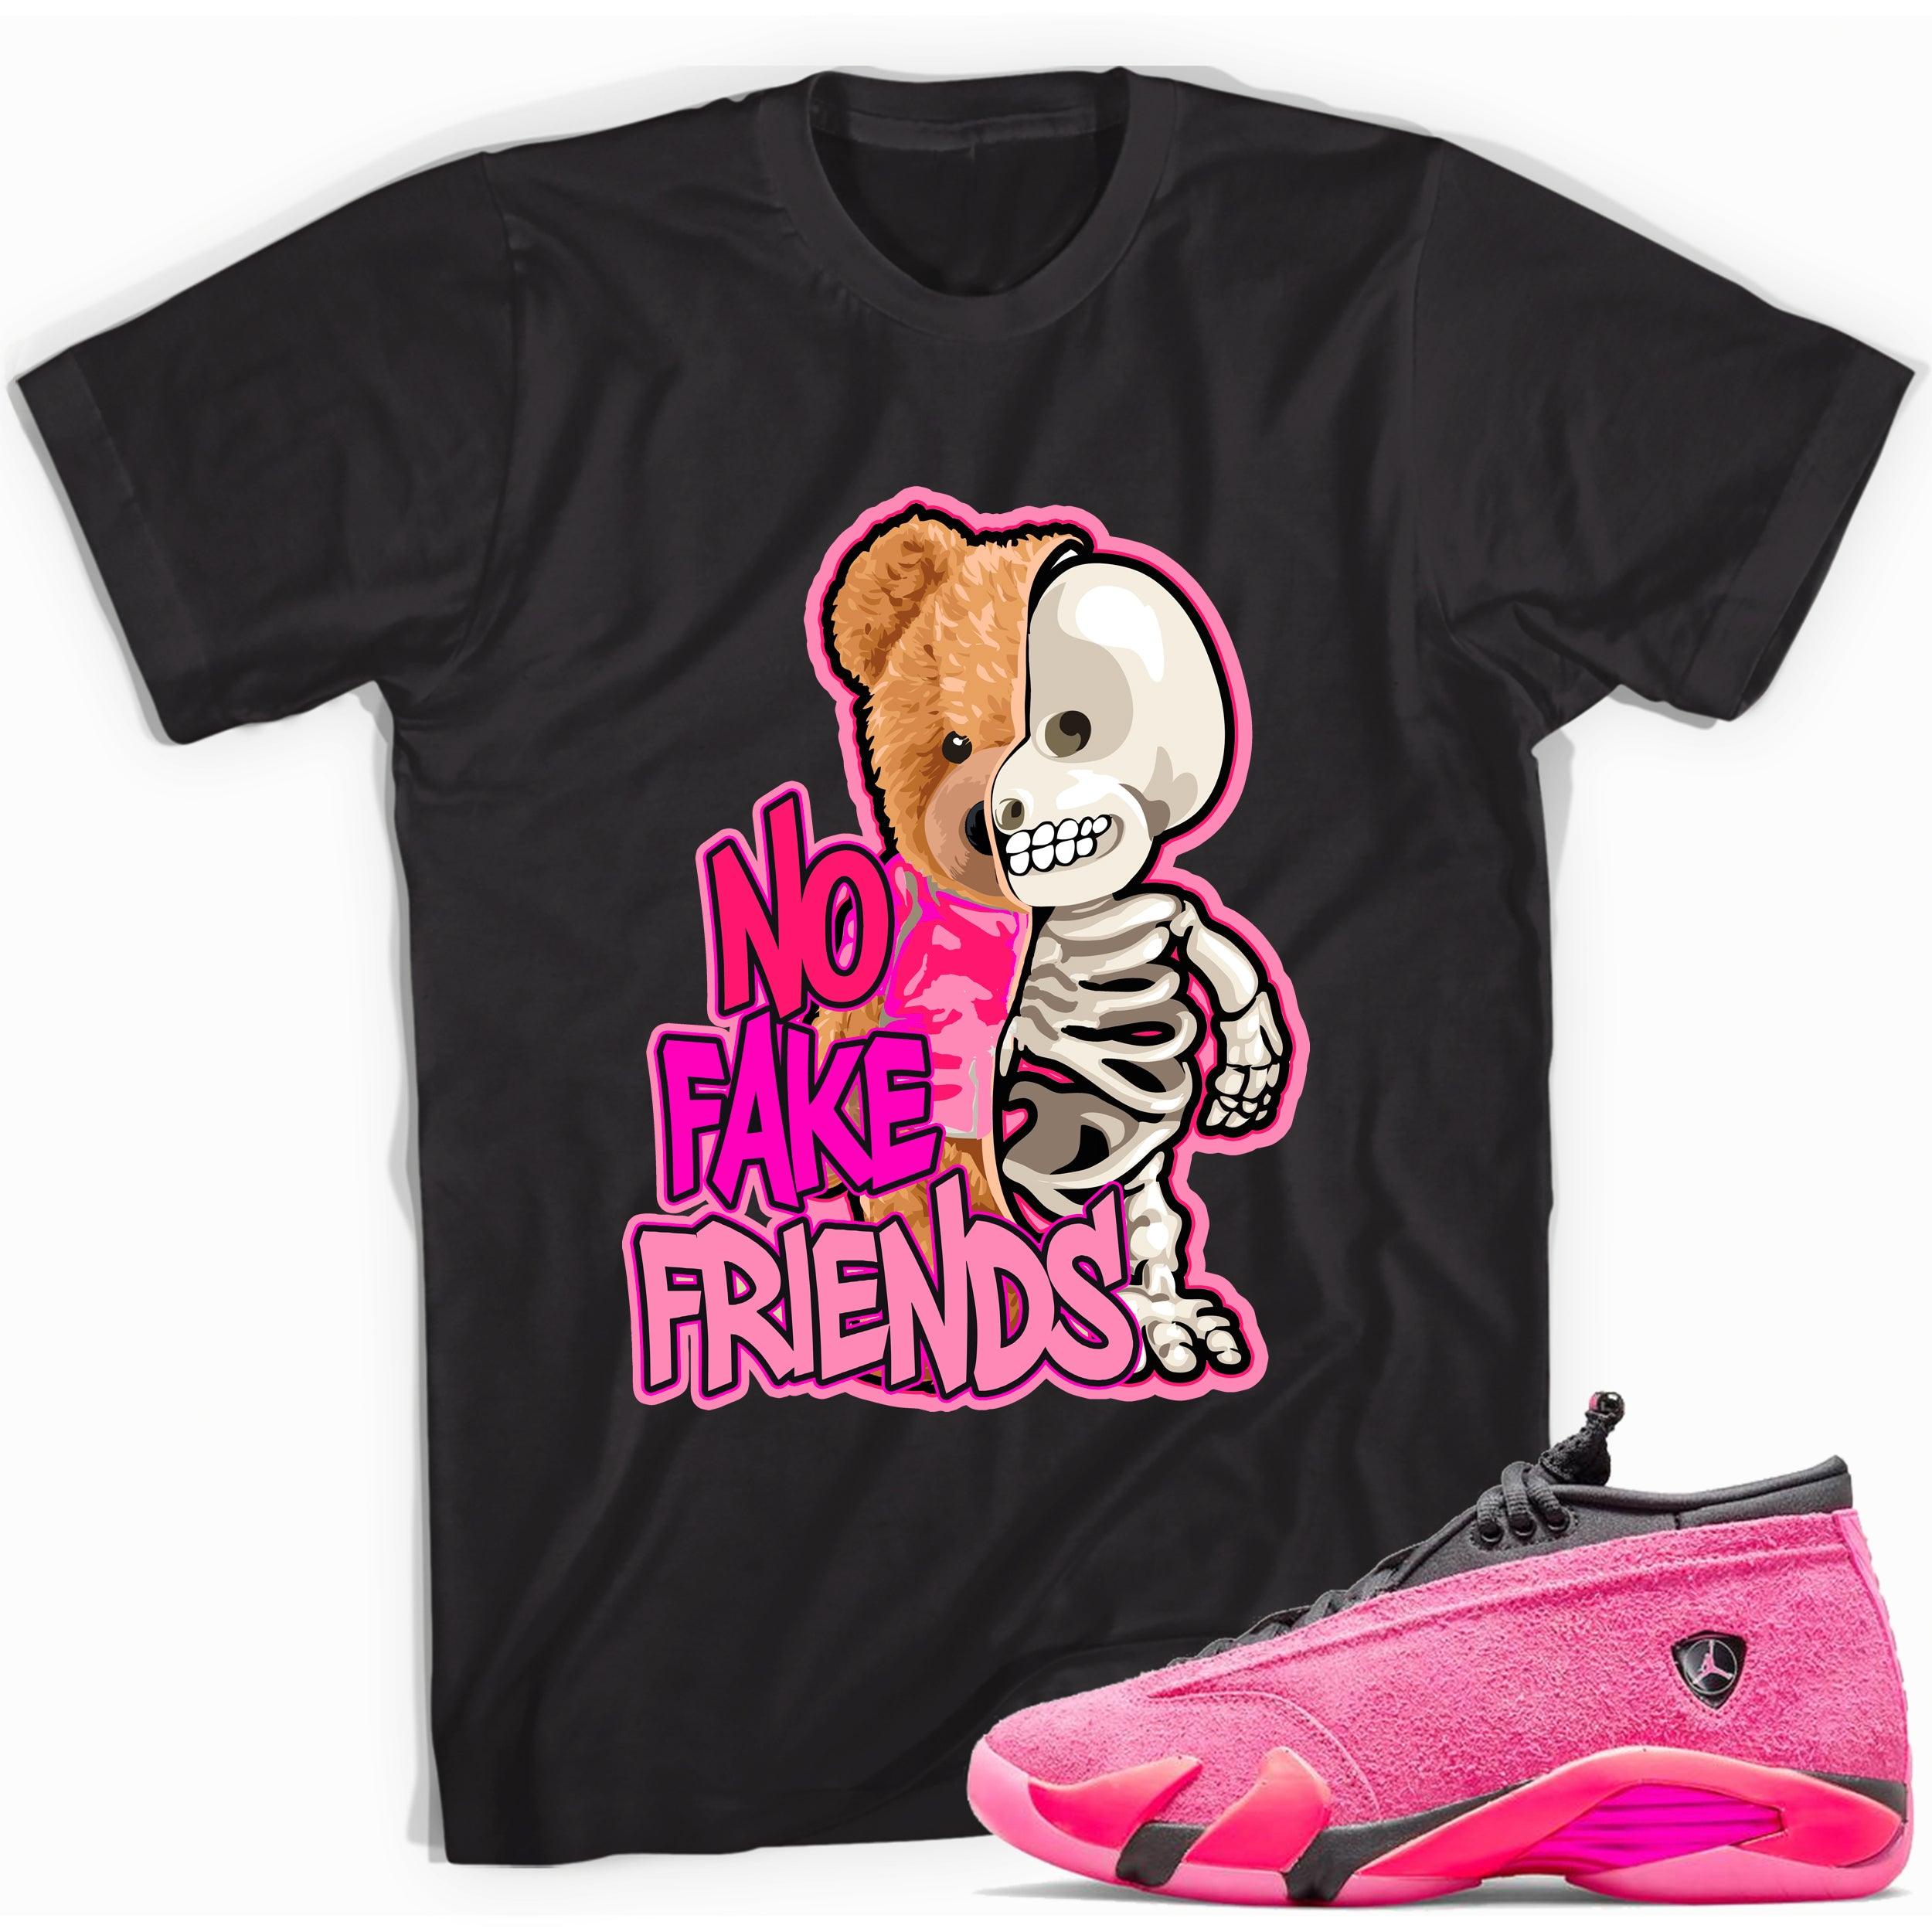 Black No Fake Friends Shirt Jordan 14s Low Shocking Pink photo